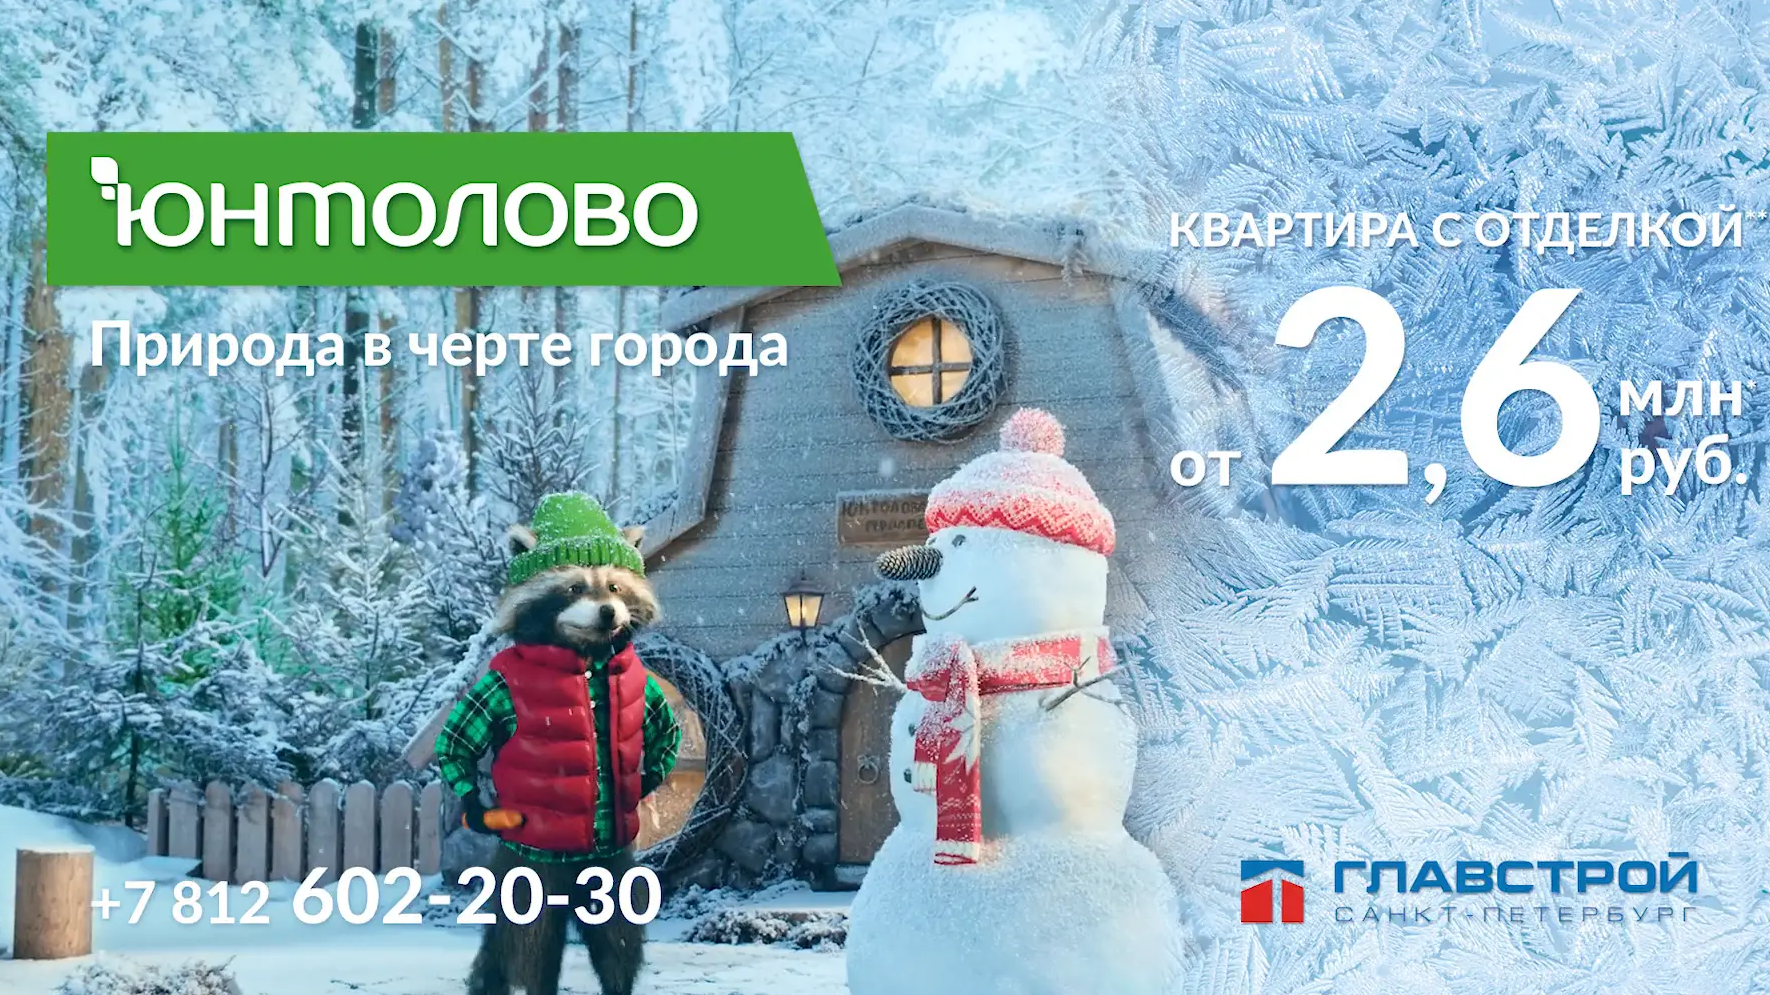 Glavstroy St.Petersburg ·; Raccoon Stepan and Snowman